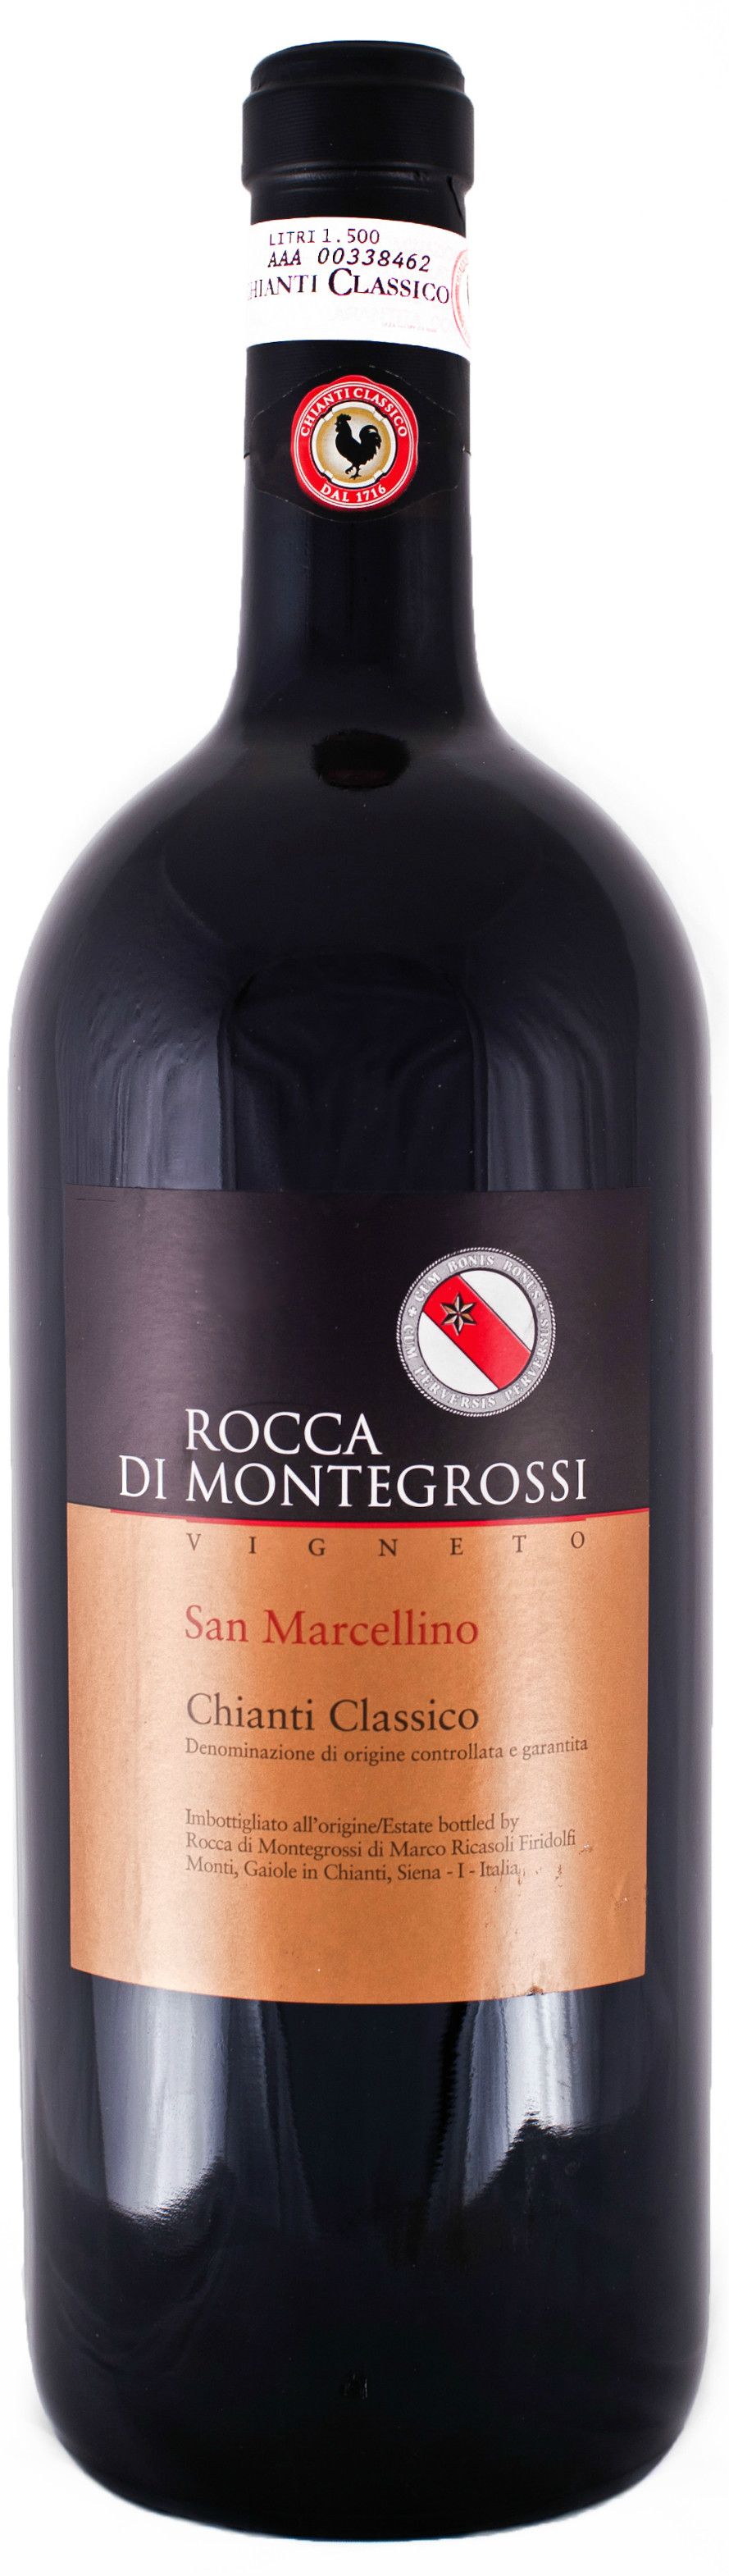 Rocca Di Montegrossi, Vigneto San Marcellino Chianti Classico, 2009